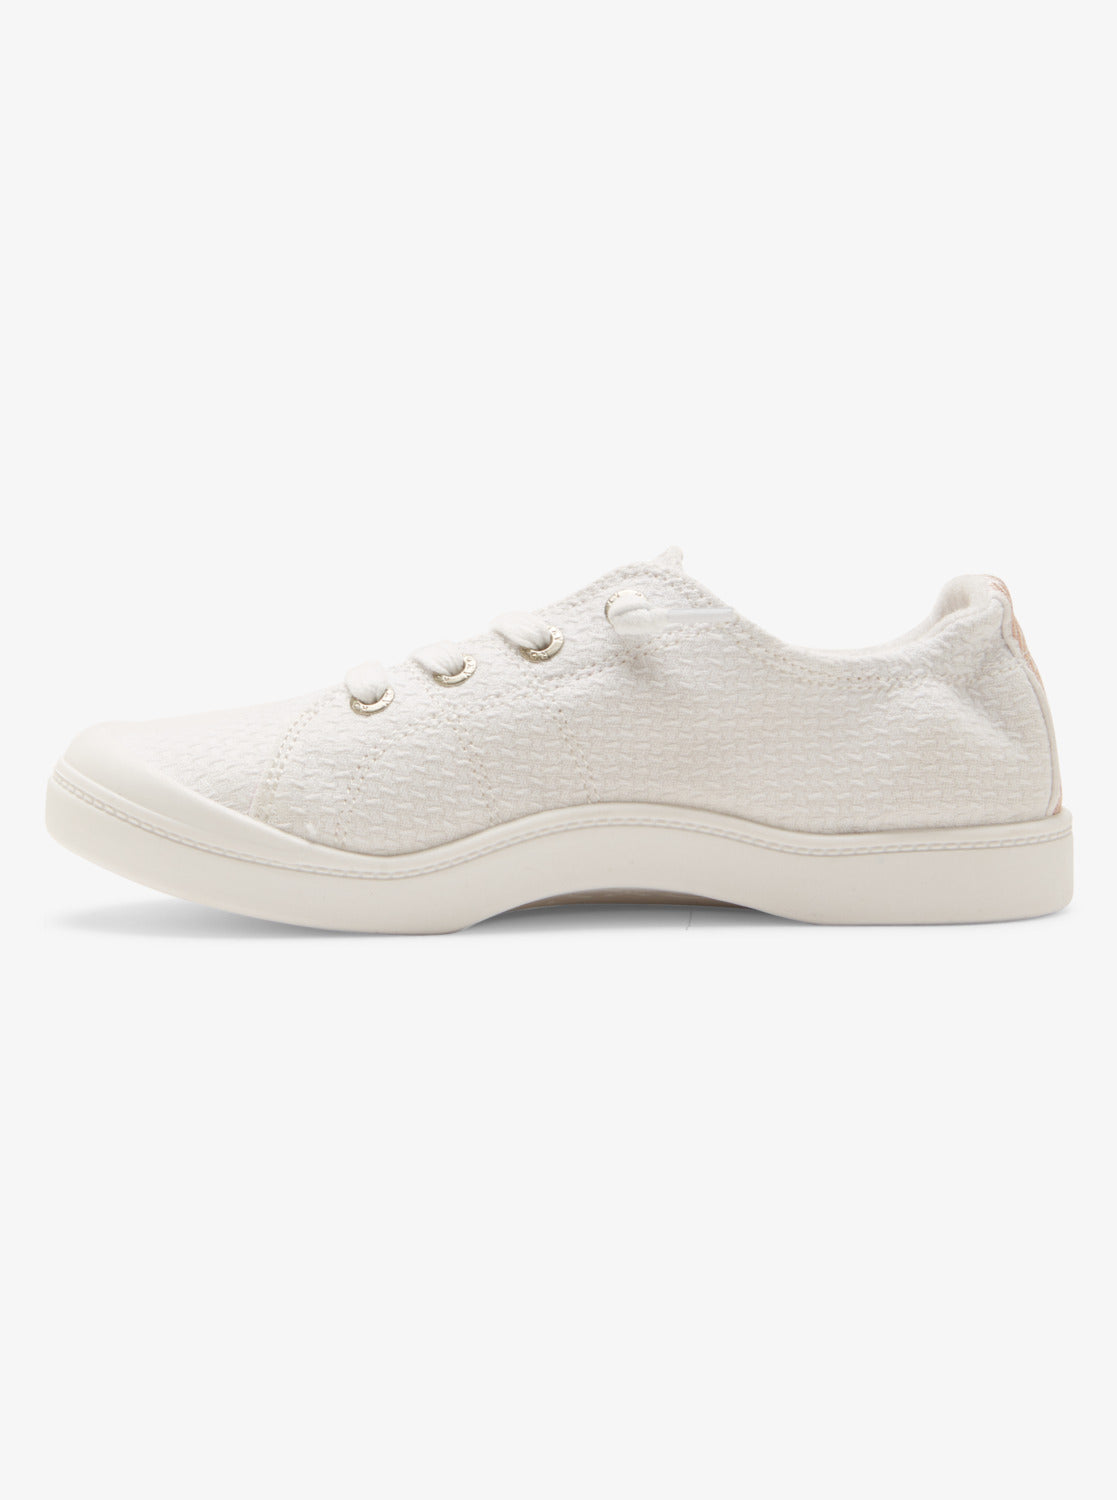 Bayshore Plus Shoes - White/White